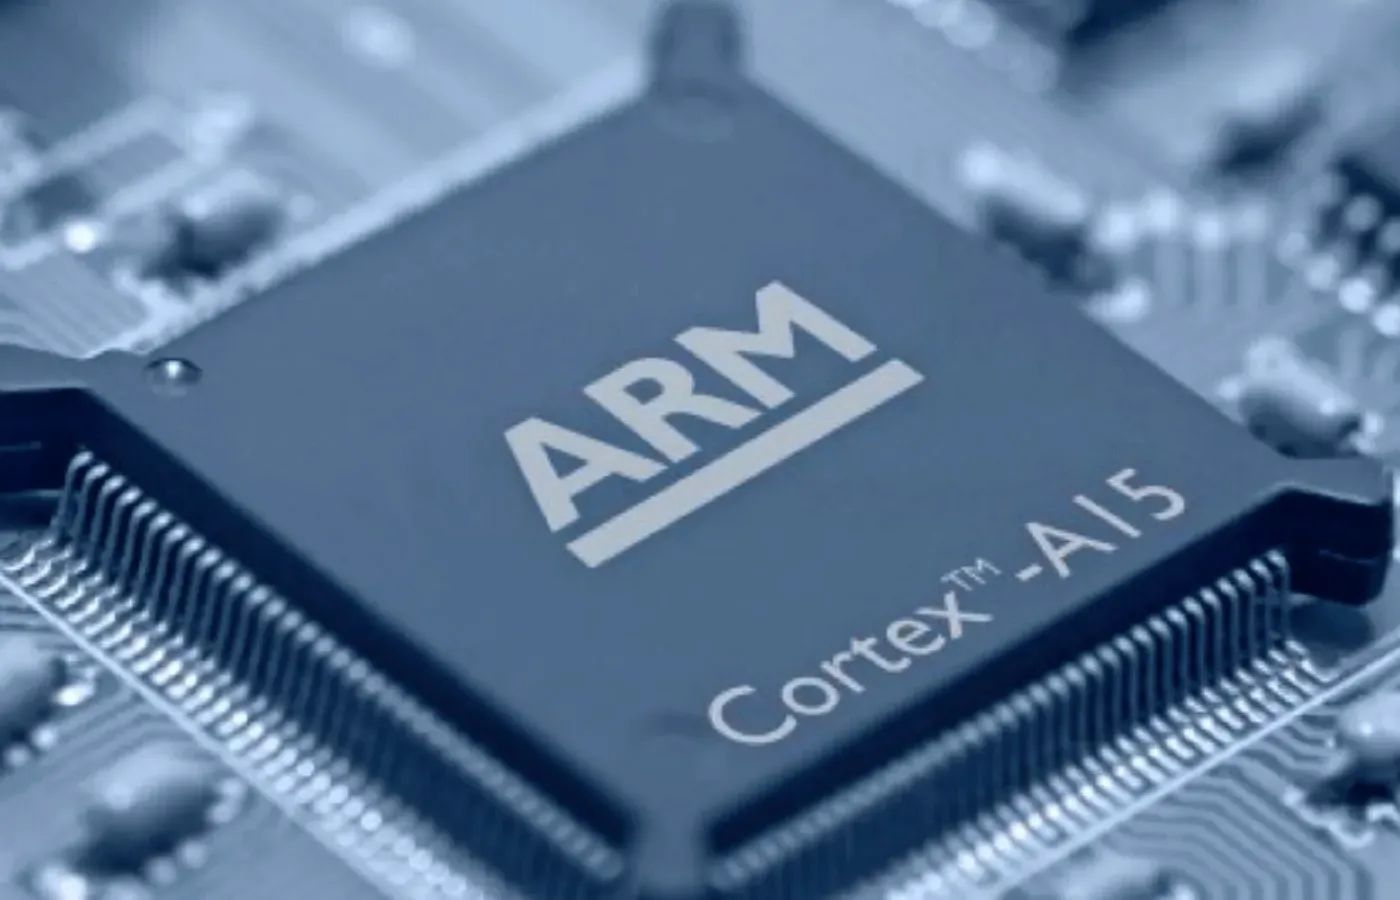 Rachat d'ARM : NVIDIA serait une très mauvaise option selon le co-fondateur du groupe anglais